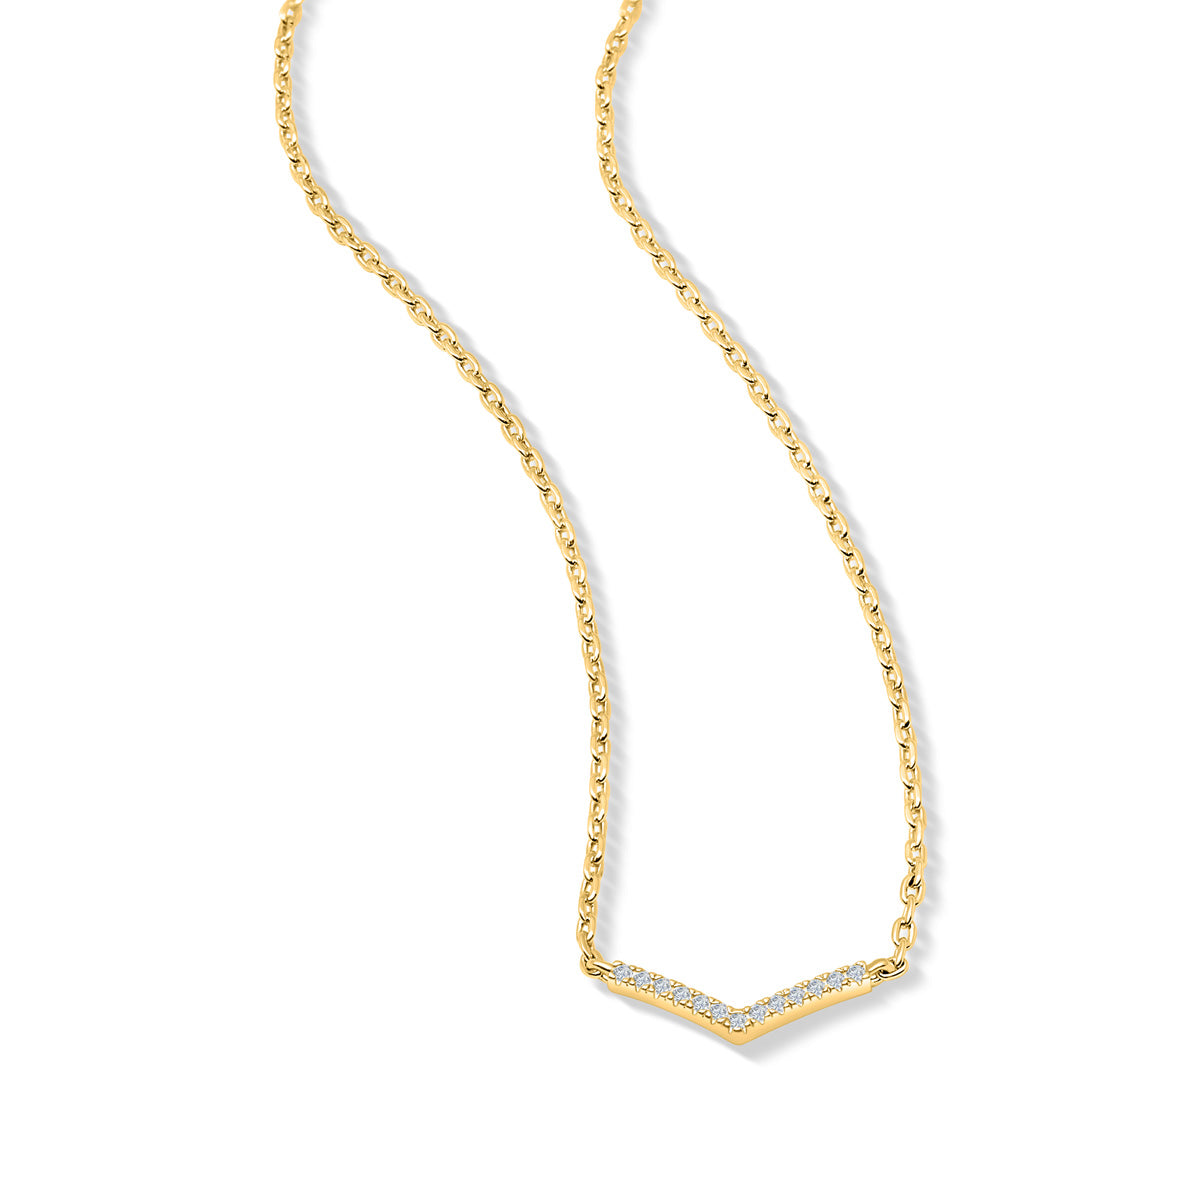 Shimmering gold v shaped necklace